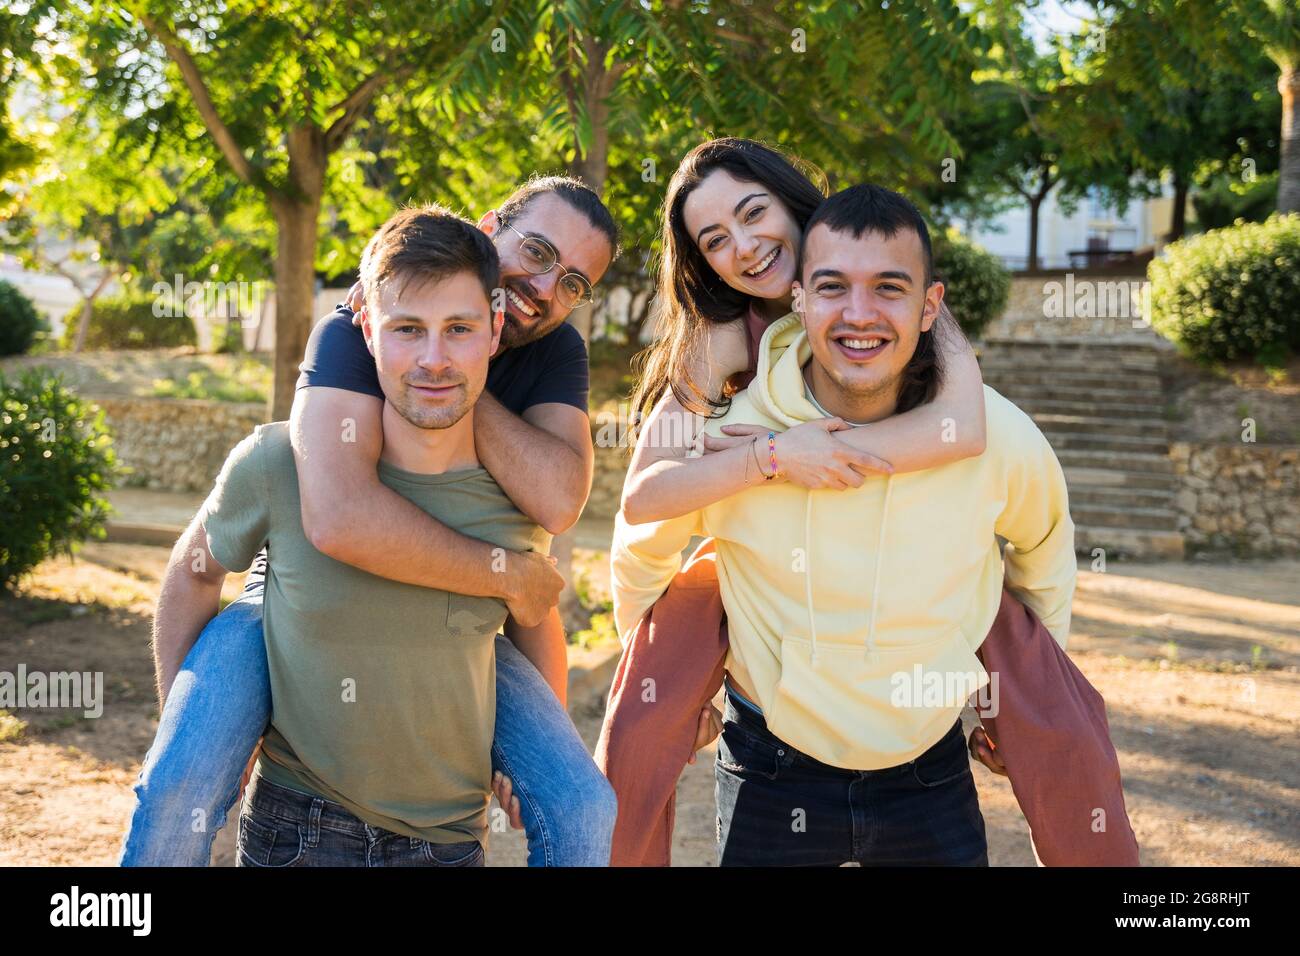 Groupe d'amis du Caucase s'amusant dans le parc. Ils sont heureux et rient. Ils portent des vêtements colorés. Par temps ensoleillé. Ils sont au-dessus de Banque D'Images